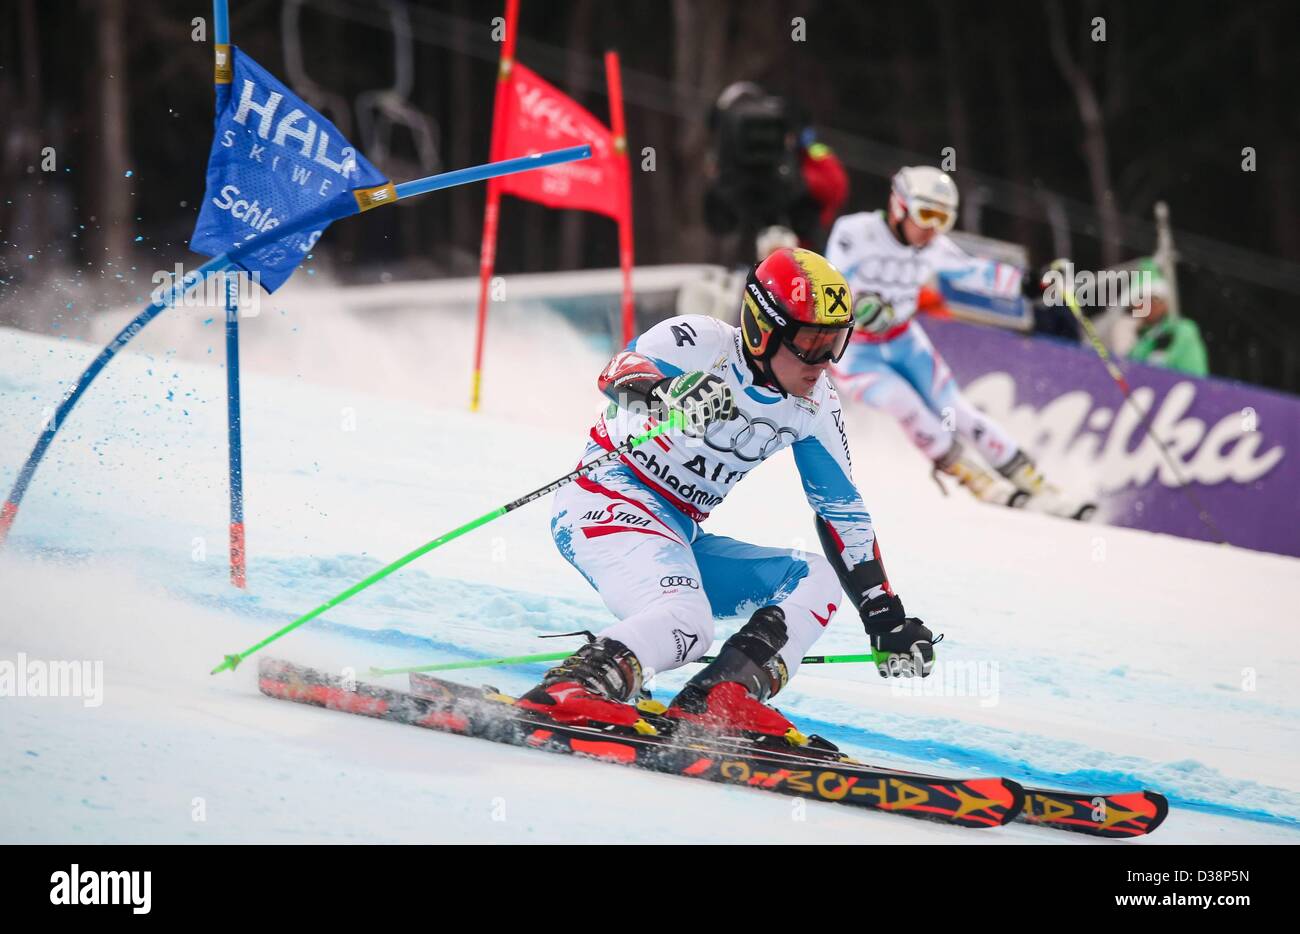 12 02 2013 12 02 2013 Planai Schladming AUT FIS World Championships Ski Alpin Team Wettbewerb im Bild Marcel Hirscher AUT Ski Alpine Ski World Cup Stockfoto